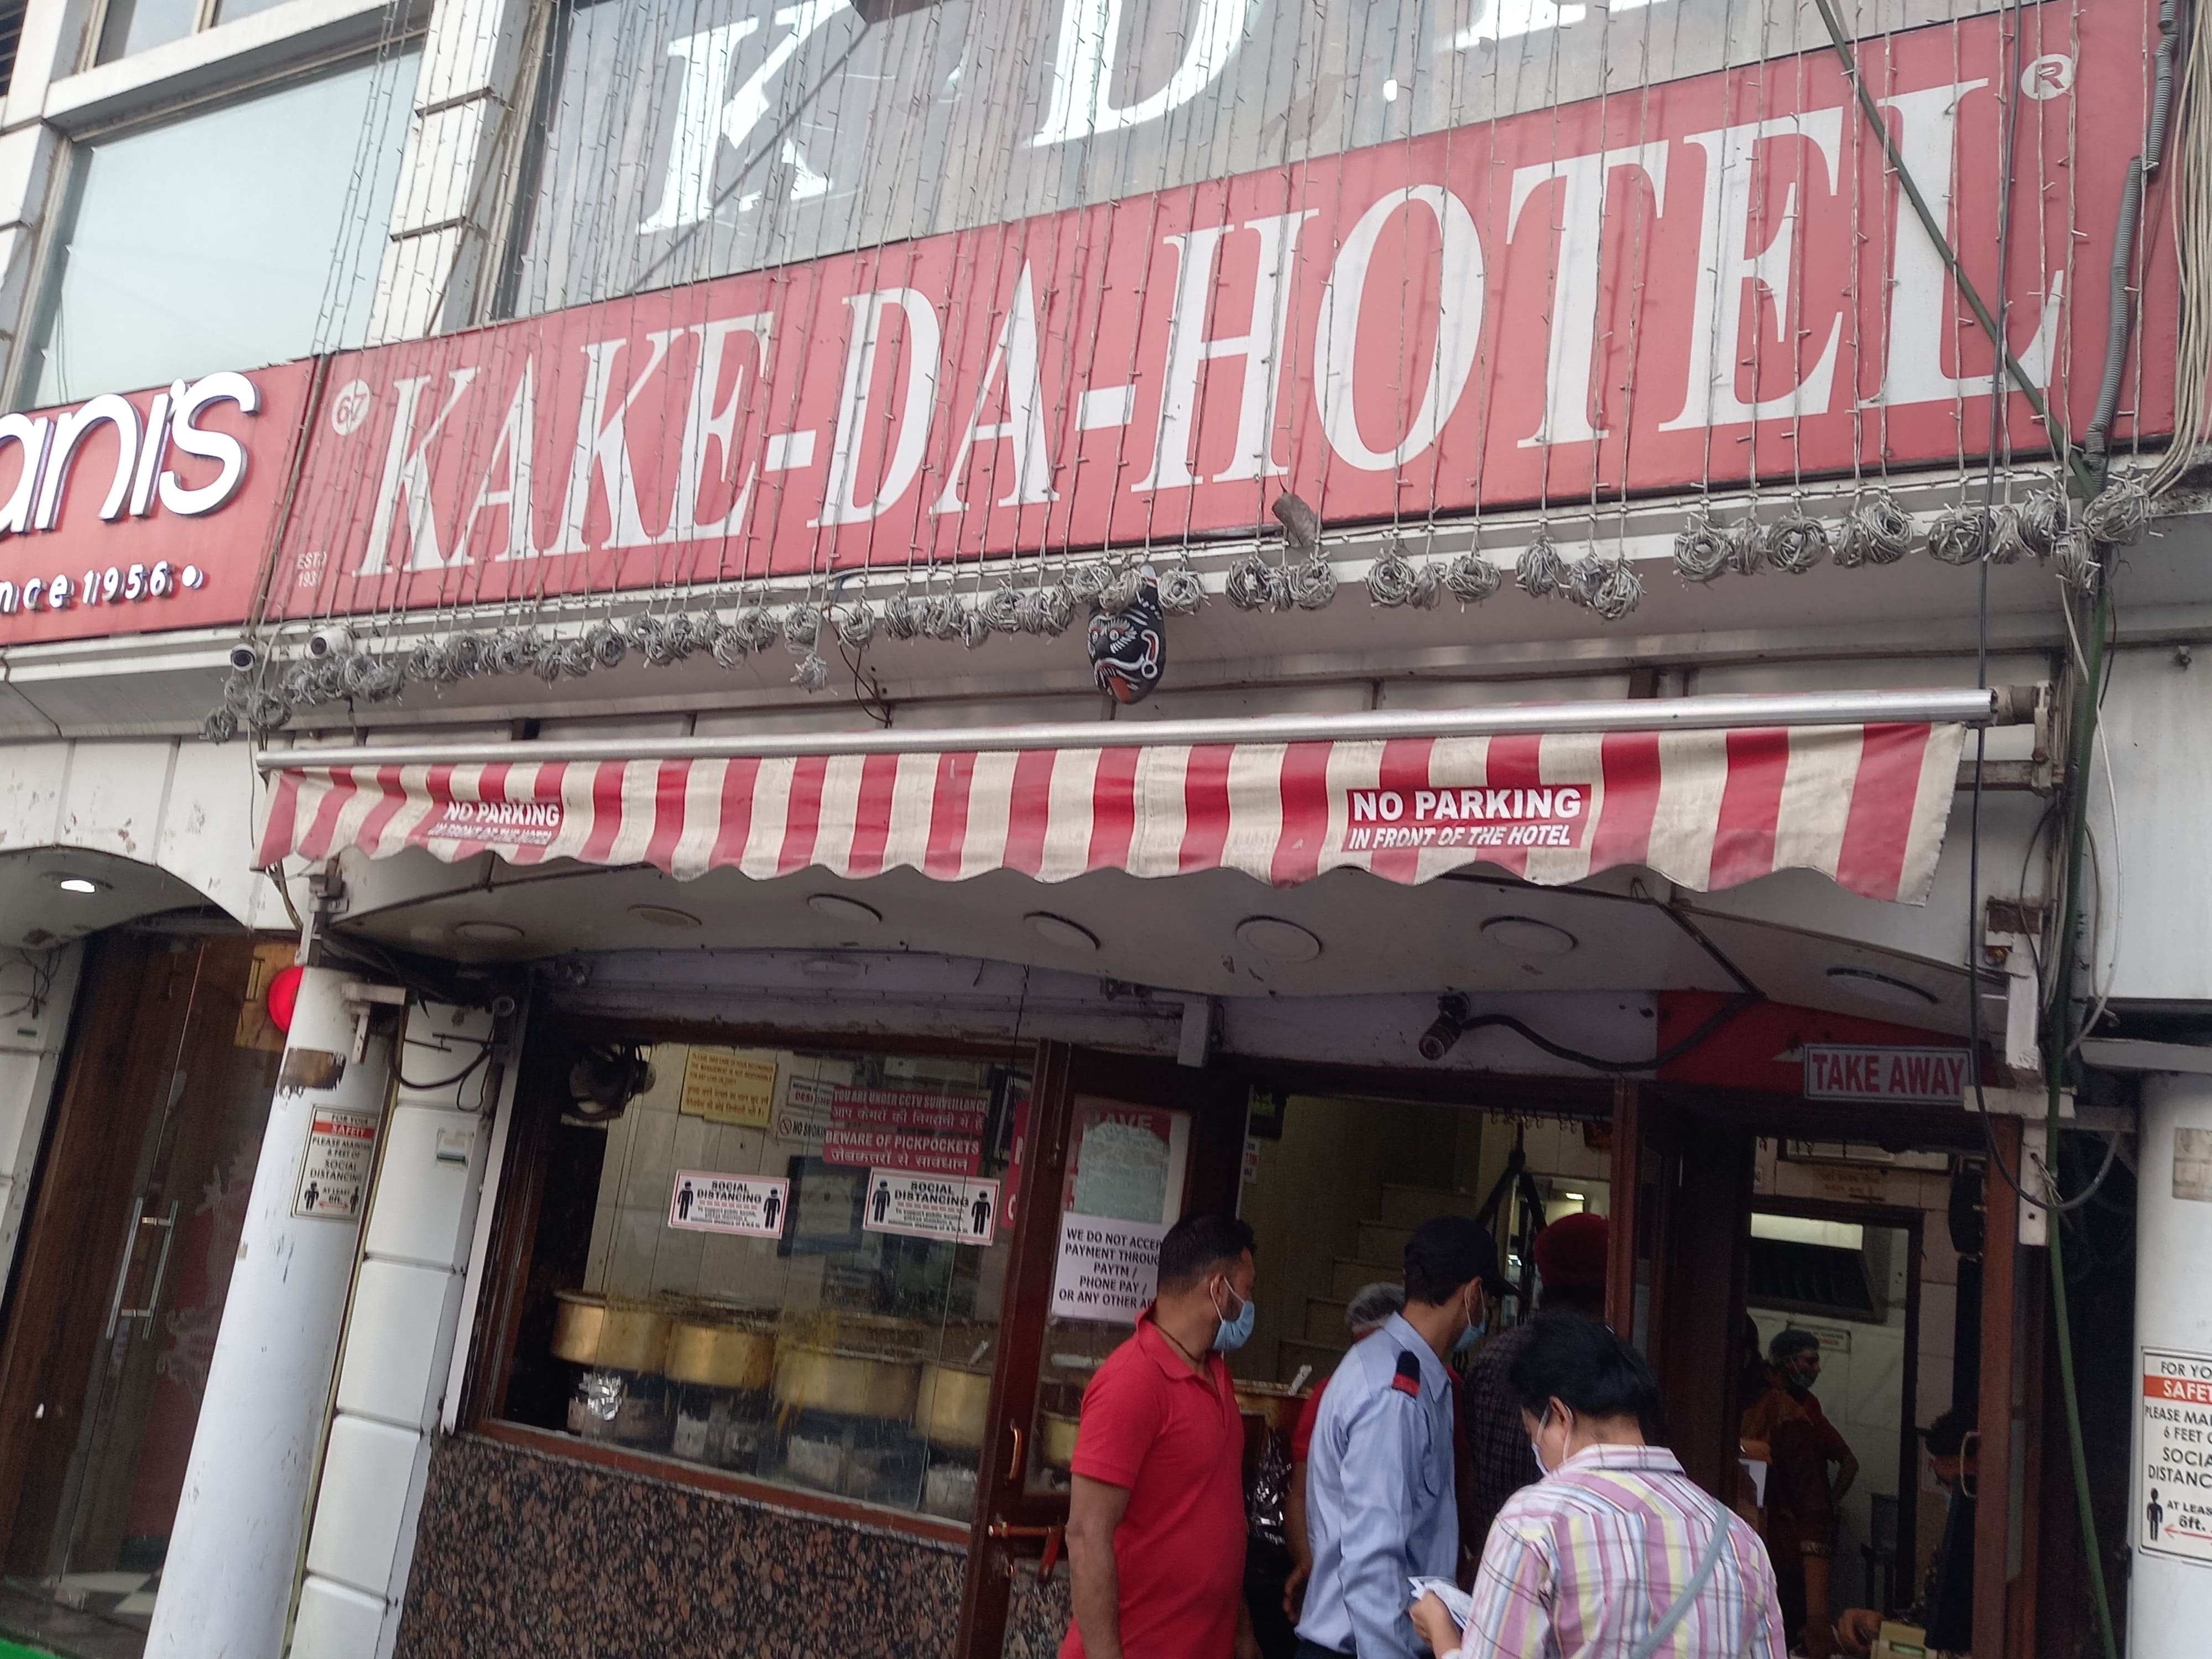 Kake -Da - Hotel, Connaught Place, New Delhi | zomato